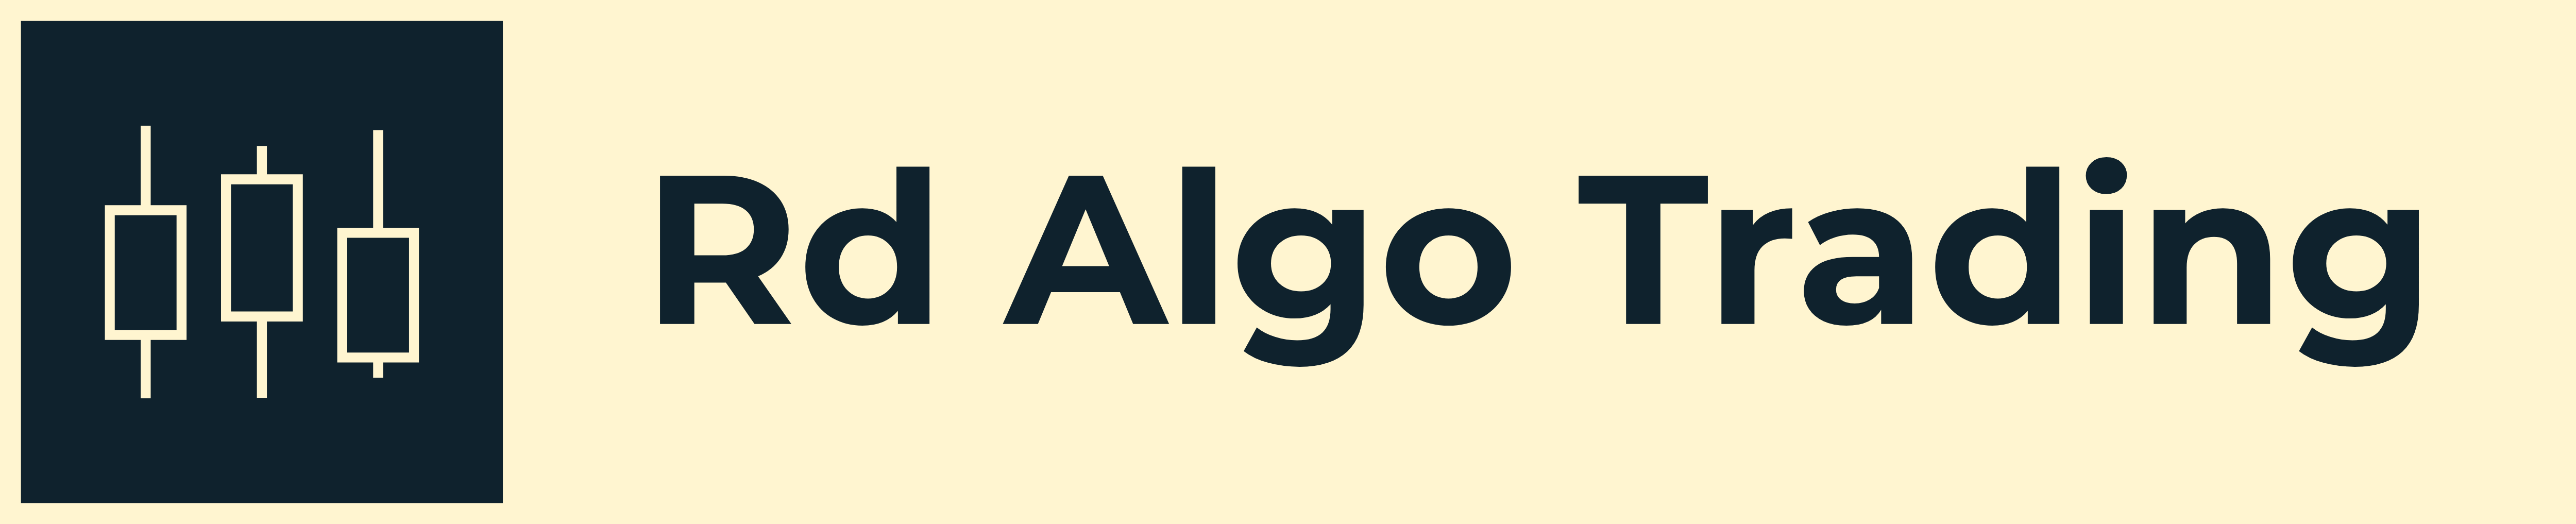 Rd Algo Trading Logo